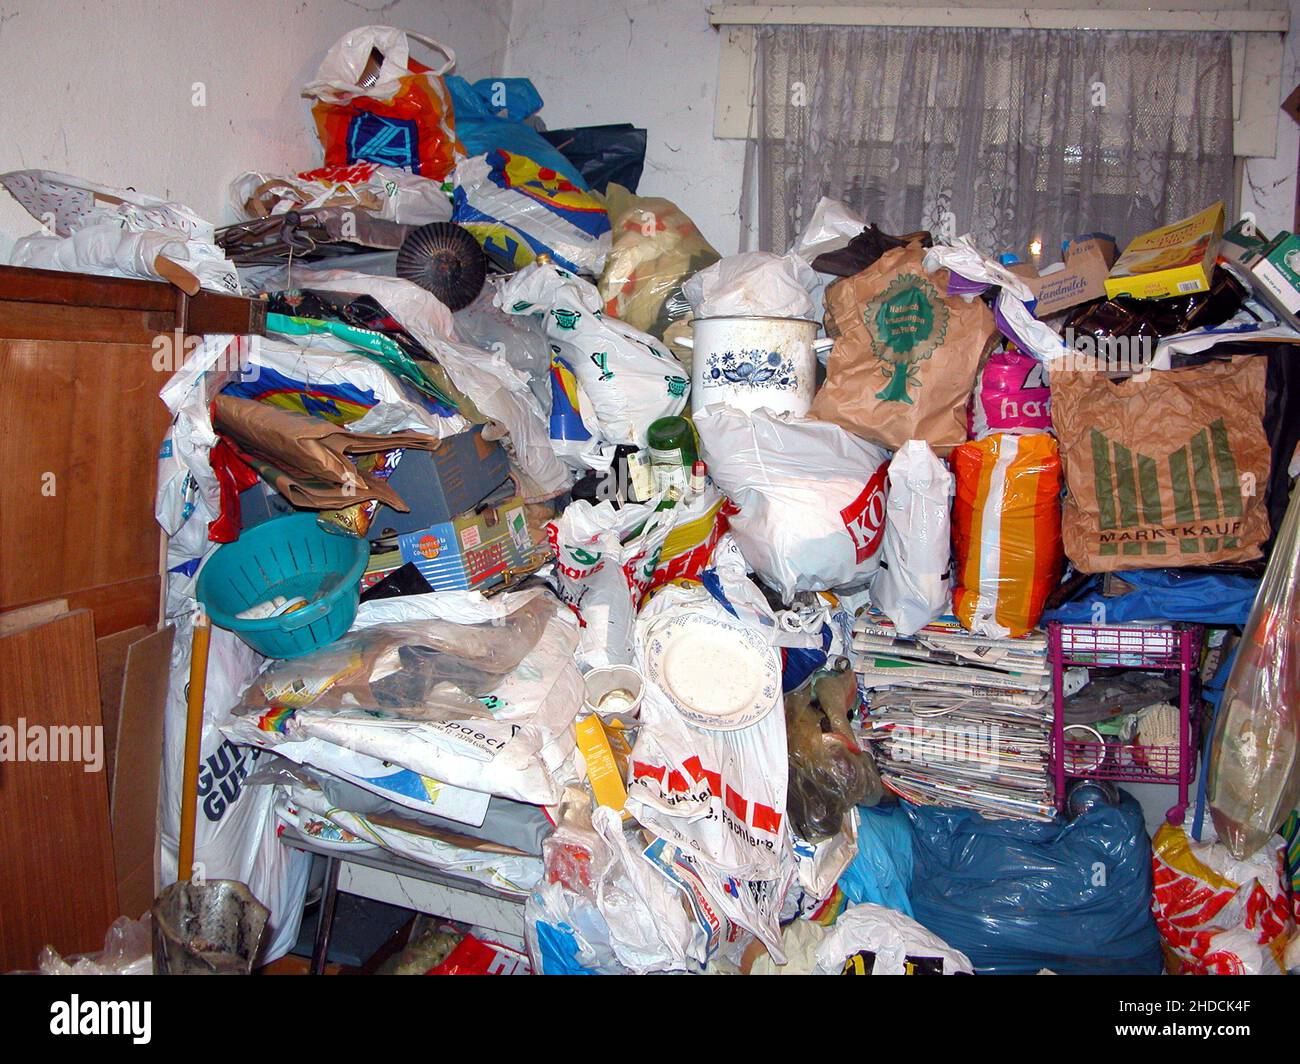 Messie, Unordentlicher Haushalt, Müll, vollgemüllte Wohnung, Messie-Syndrom, Stock Photo